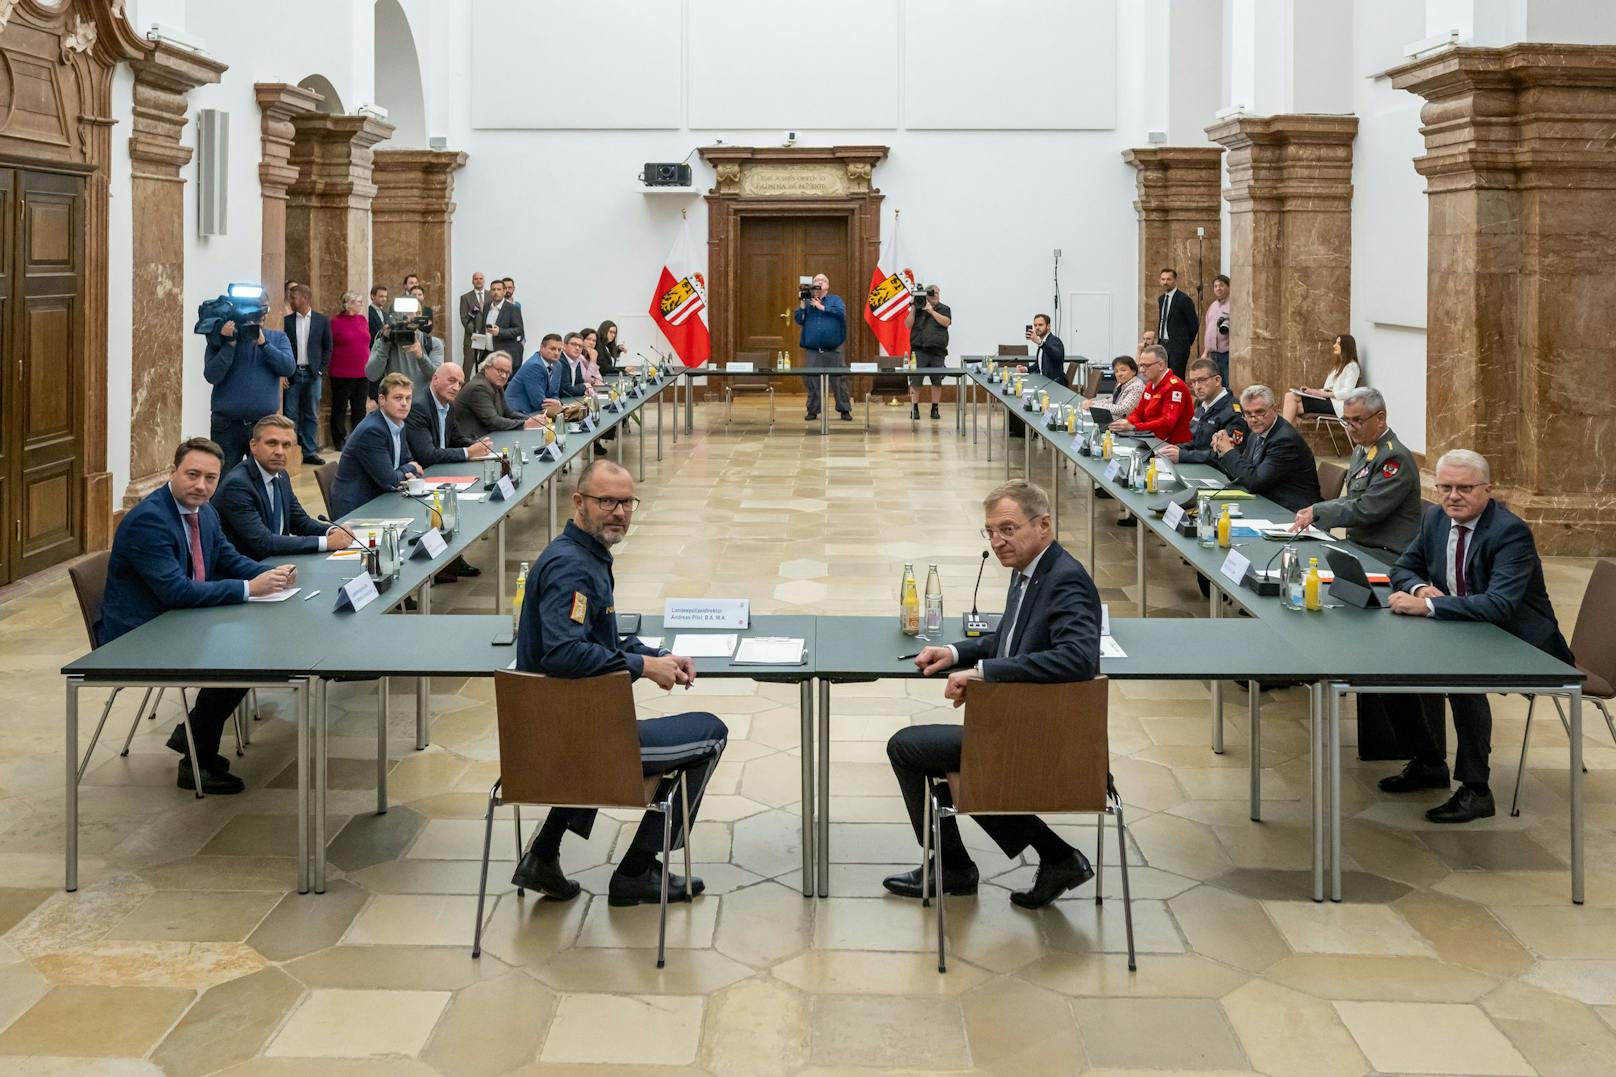 Sitzung des Landessicherheitsrates unter Vorsitz von LH Stelzer. Aufgrund der Vorfälle in der Halloween-Nacht in Linz und anderen Städten hat LH Thomas Stelzer die Sitzung einberufen.